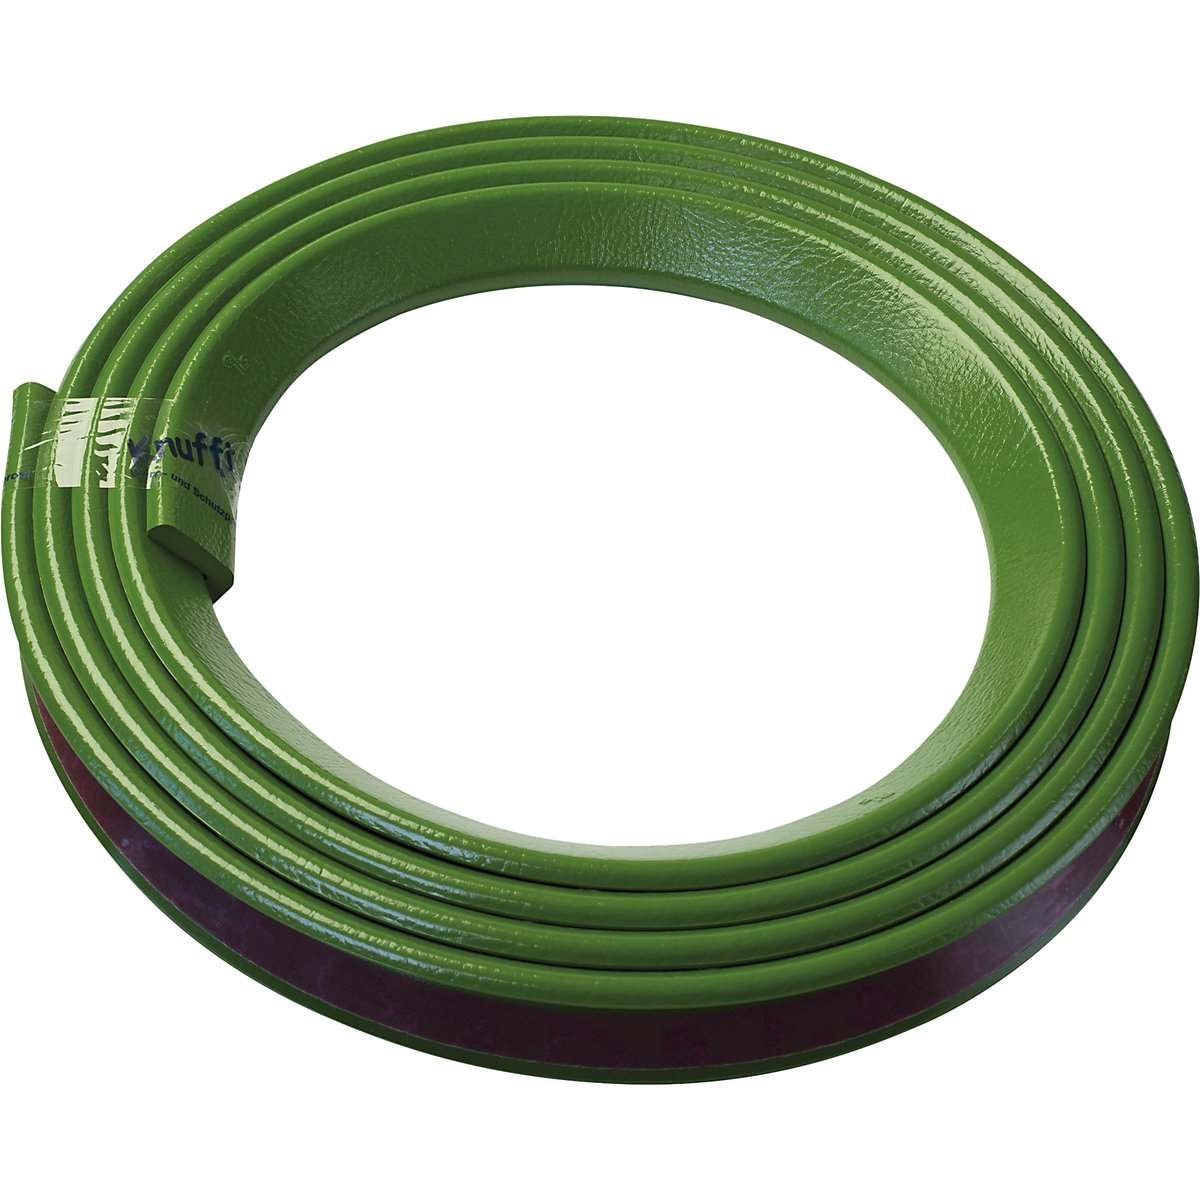 Knuffi® sarokvédő – SHG, H típus, 1 db 5 m-es tekercs, zöld-24